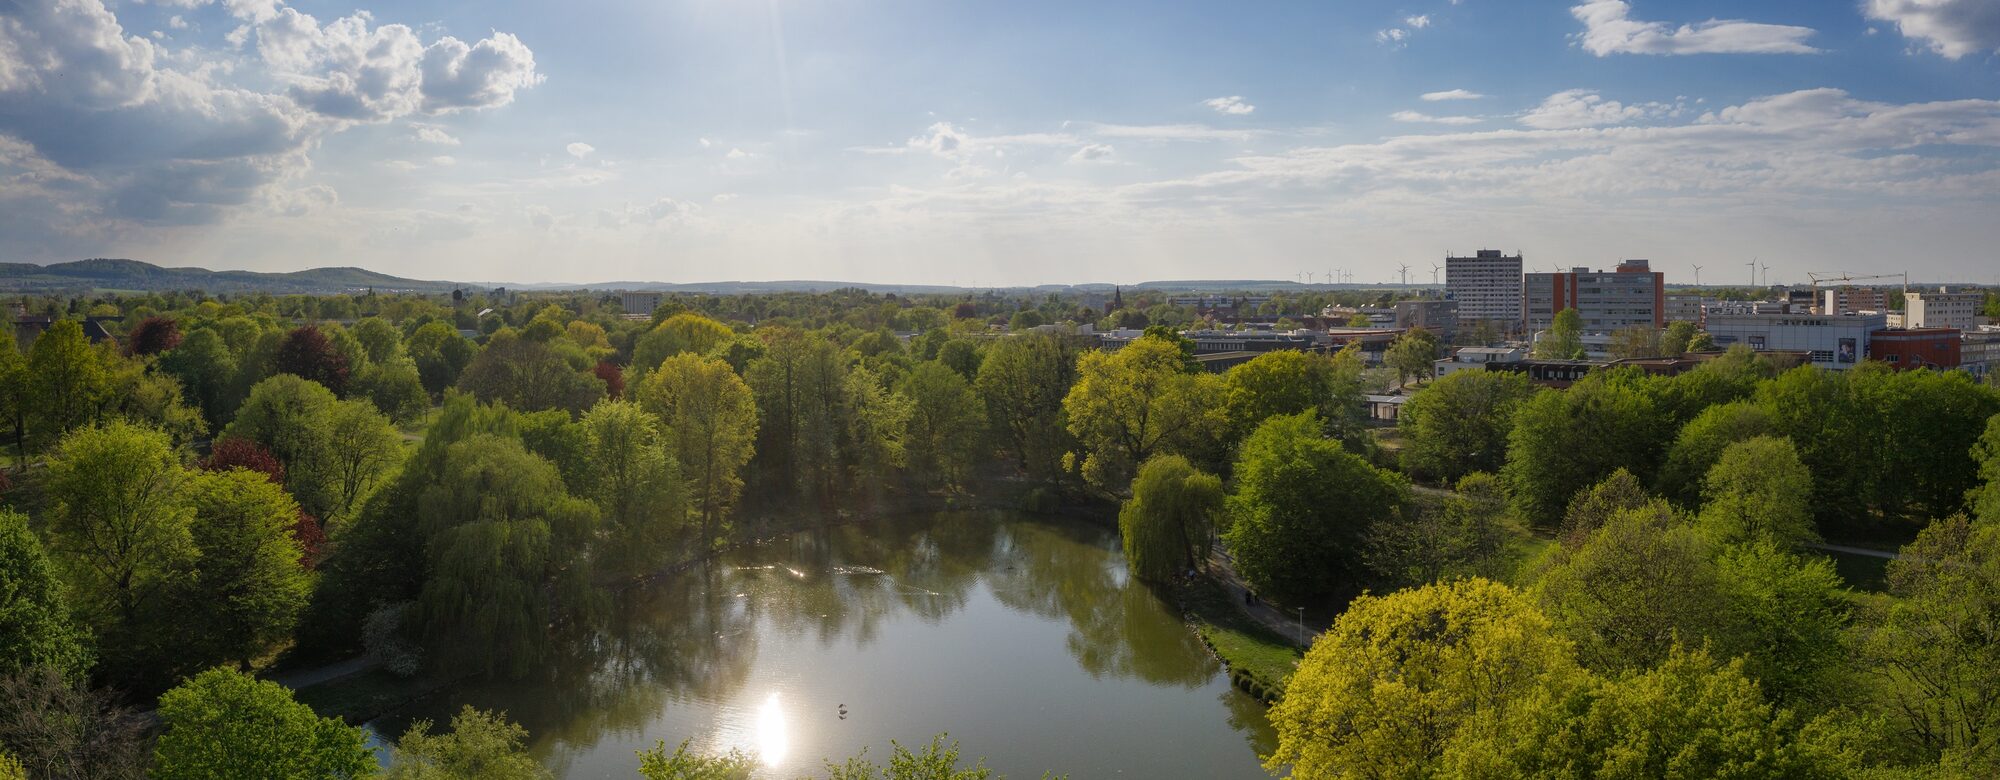 Der Stadtpark in Lebenstedt aus der Luft fotografiert.